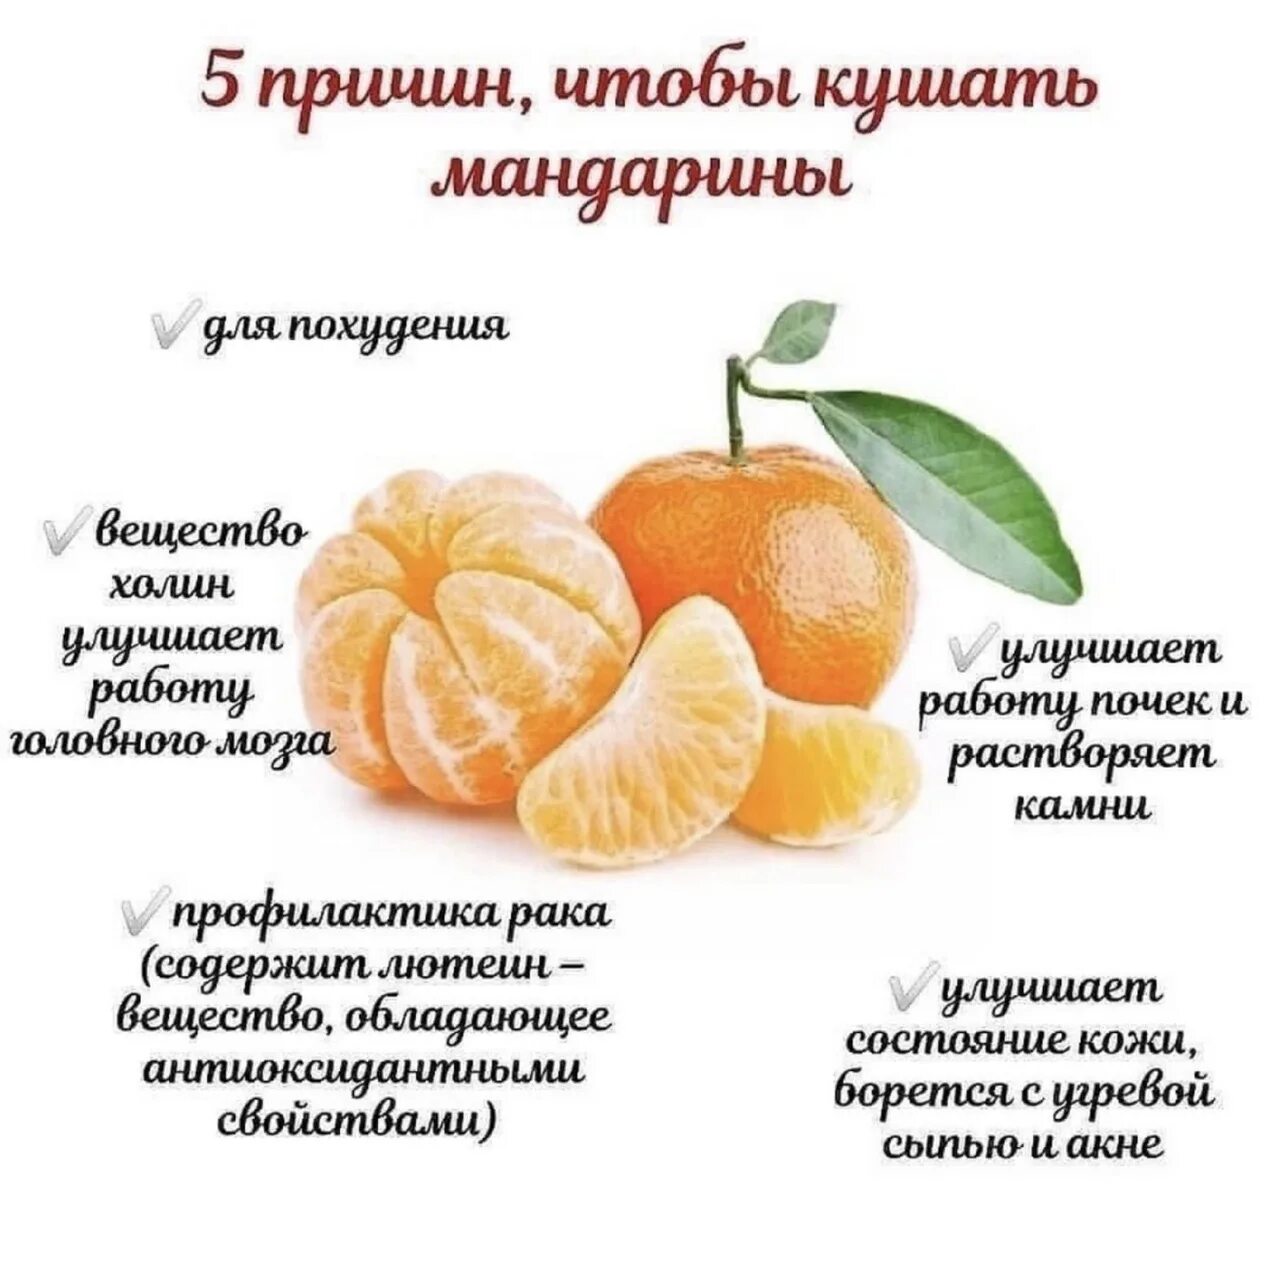 Витамины в кожуре. Польза мандаринов. Мандарины польза. Чем полезны мандарины. Витамины в мандаринах.